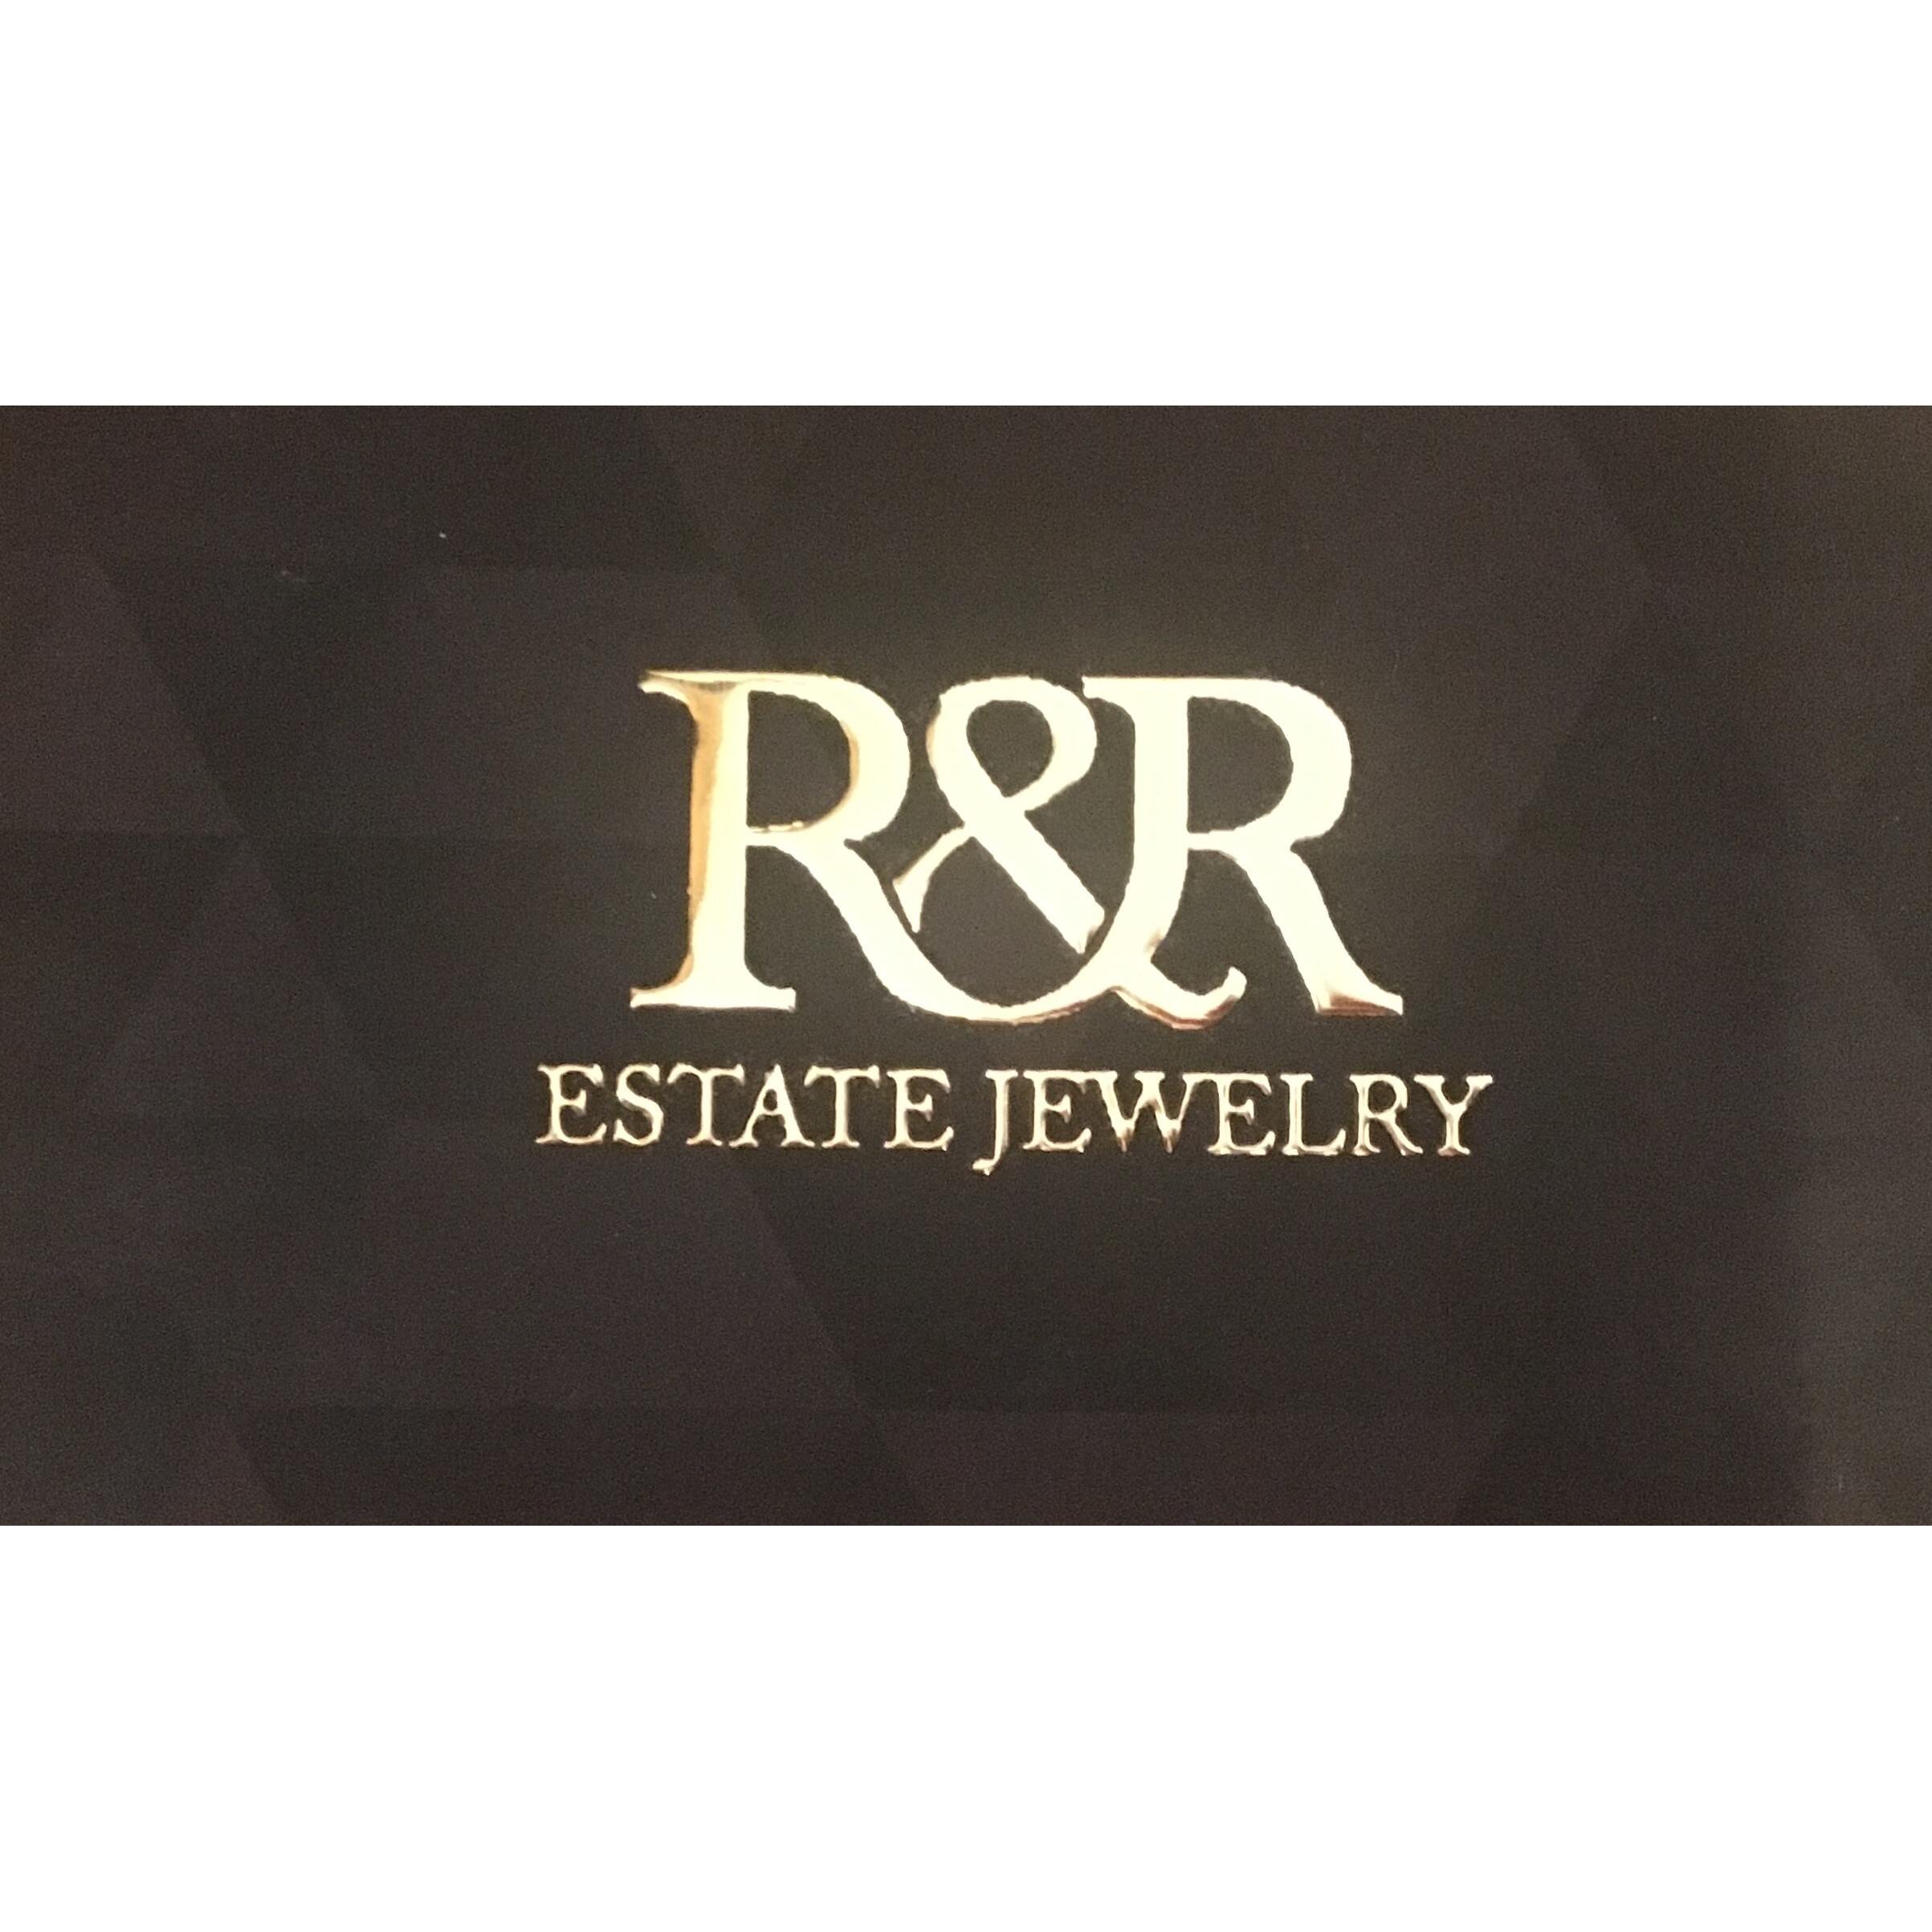 R & R Estate Jewelry Photo